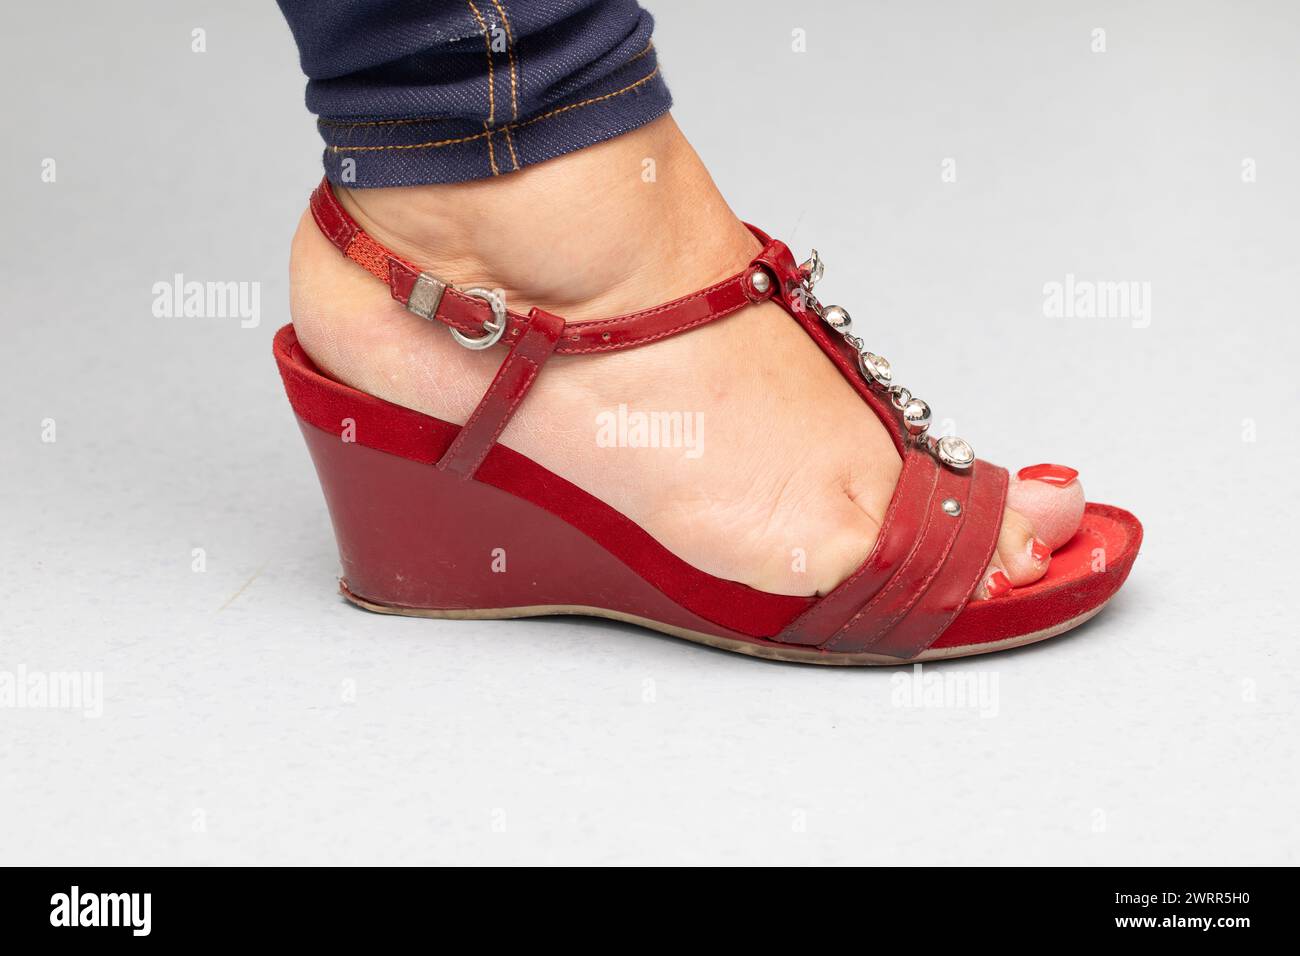 Nahaufnahme eines Frauenfußes in einer stylischen Sandale mit Keilabsatz und dekorativen Details Stockfoto